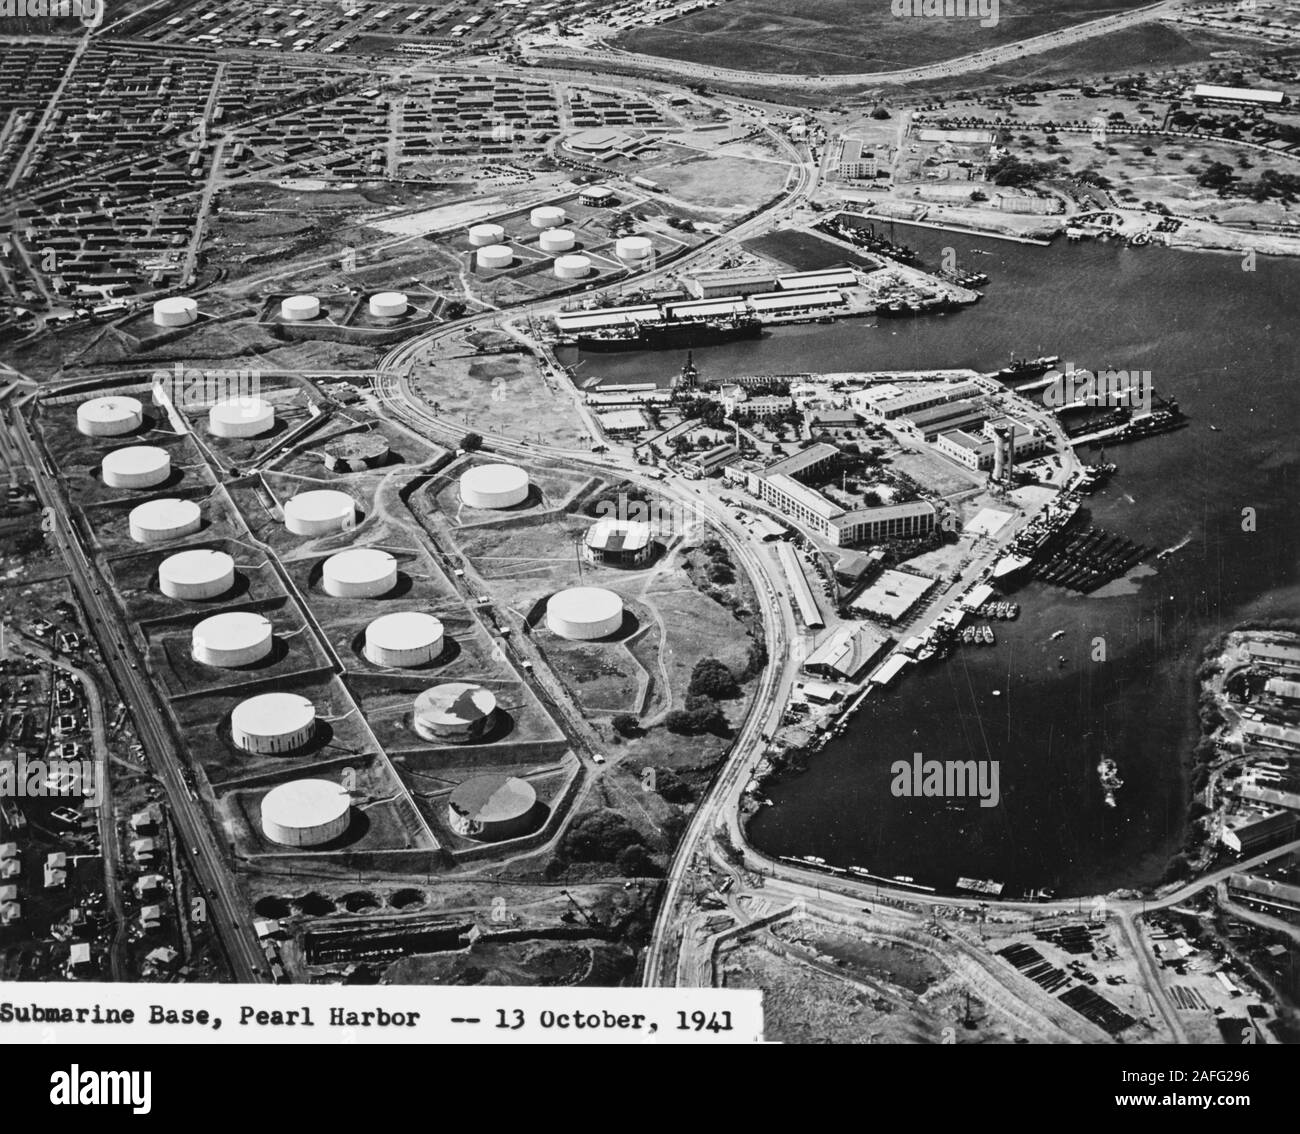 Pearl Harbor - vue aérienne de la base sous-marine (centre-droit) avec le carburant ferme à gauche, en regardant vers le sud le 13 octobre 1941. Parmi les 16 réservoirs de carburant dans le groupe inférieur et dix chars dans le groupe supérieur, deux ont été peints pour ressembler à des bâtiments (réservoir supérieur dans la région de groupe, et dans le réservoir de droite groupe inférieur). D'autres réservoirs semblent être peintes pour ressembler à du terrain. Le long du quai au centre droit sont USS Niagara (PG-52) avec sept ou huit bateaux PT aux côtés (le plus proche à la caméra), et USS Holland (AS-3) avec sept sous-marins à quai. Avant l'attaque Banque D'Images